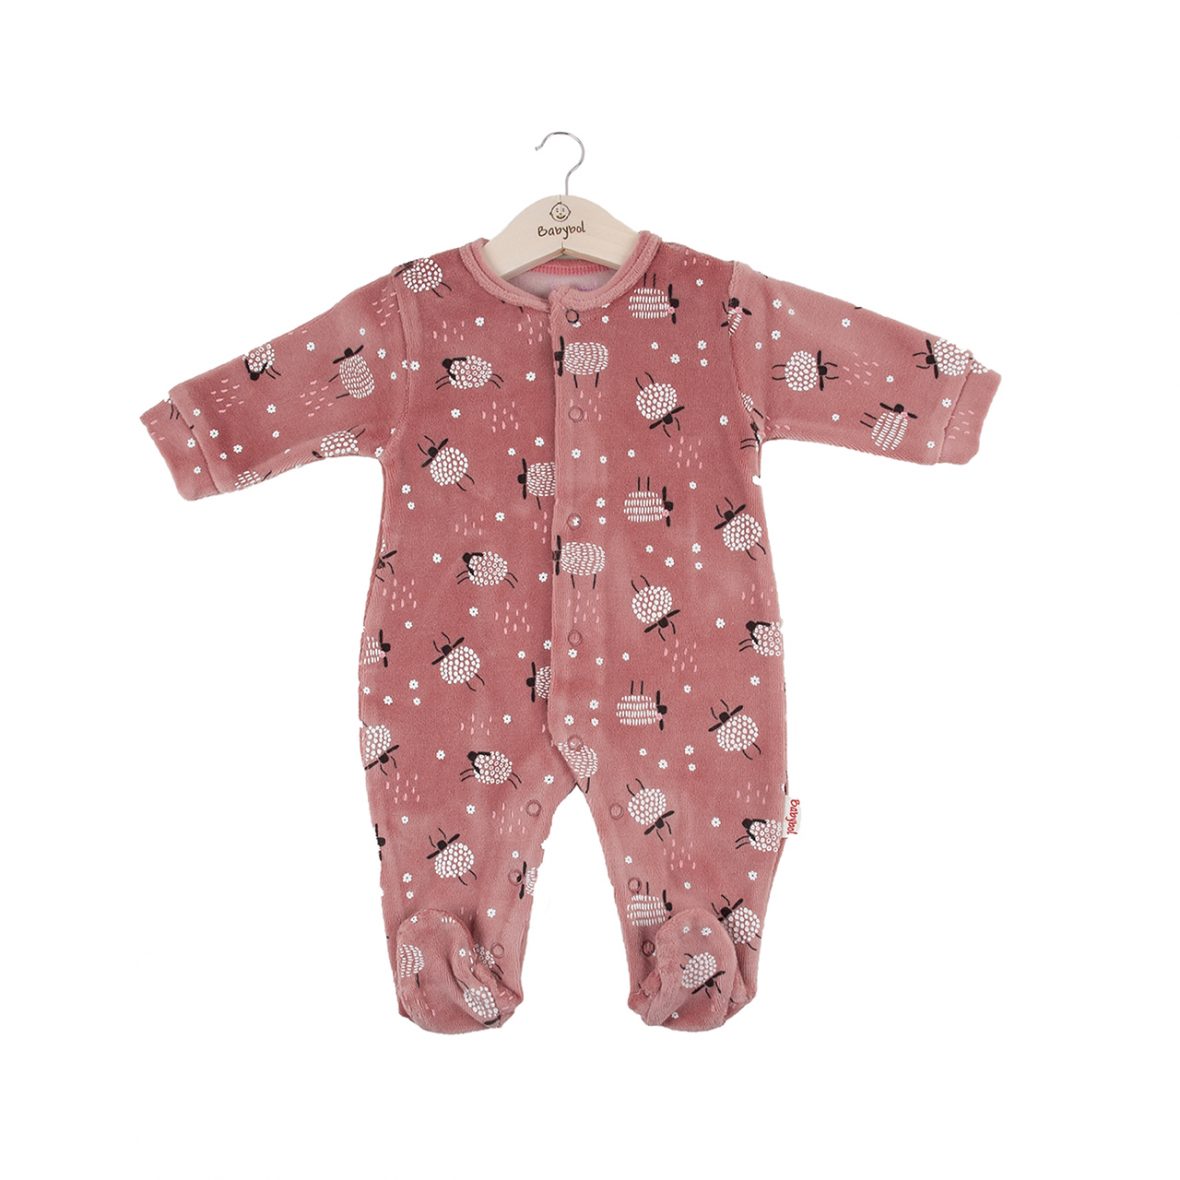 Babybol pijama 22023